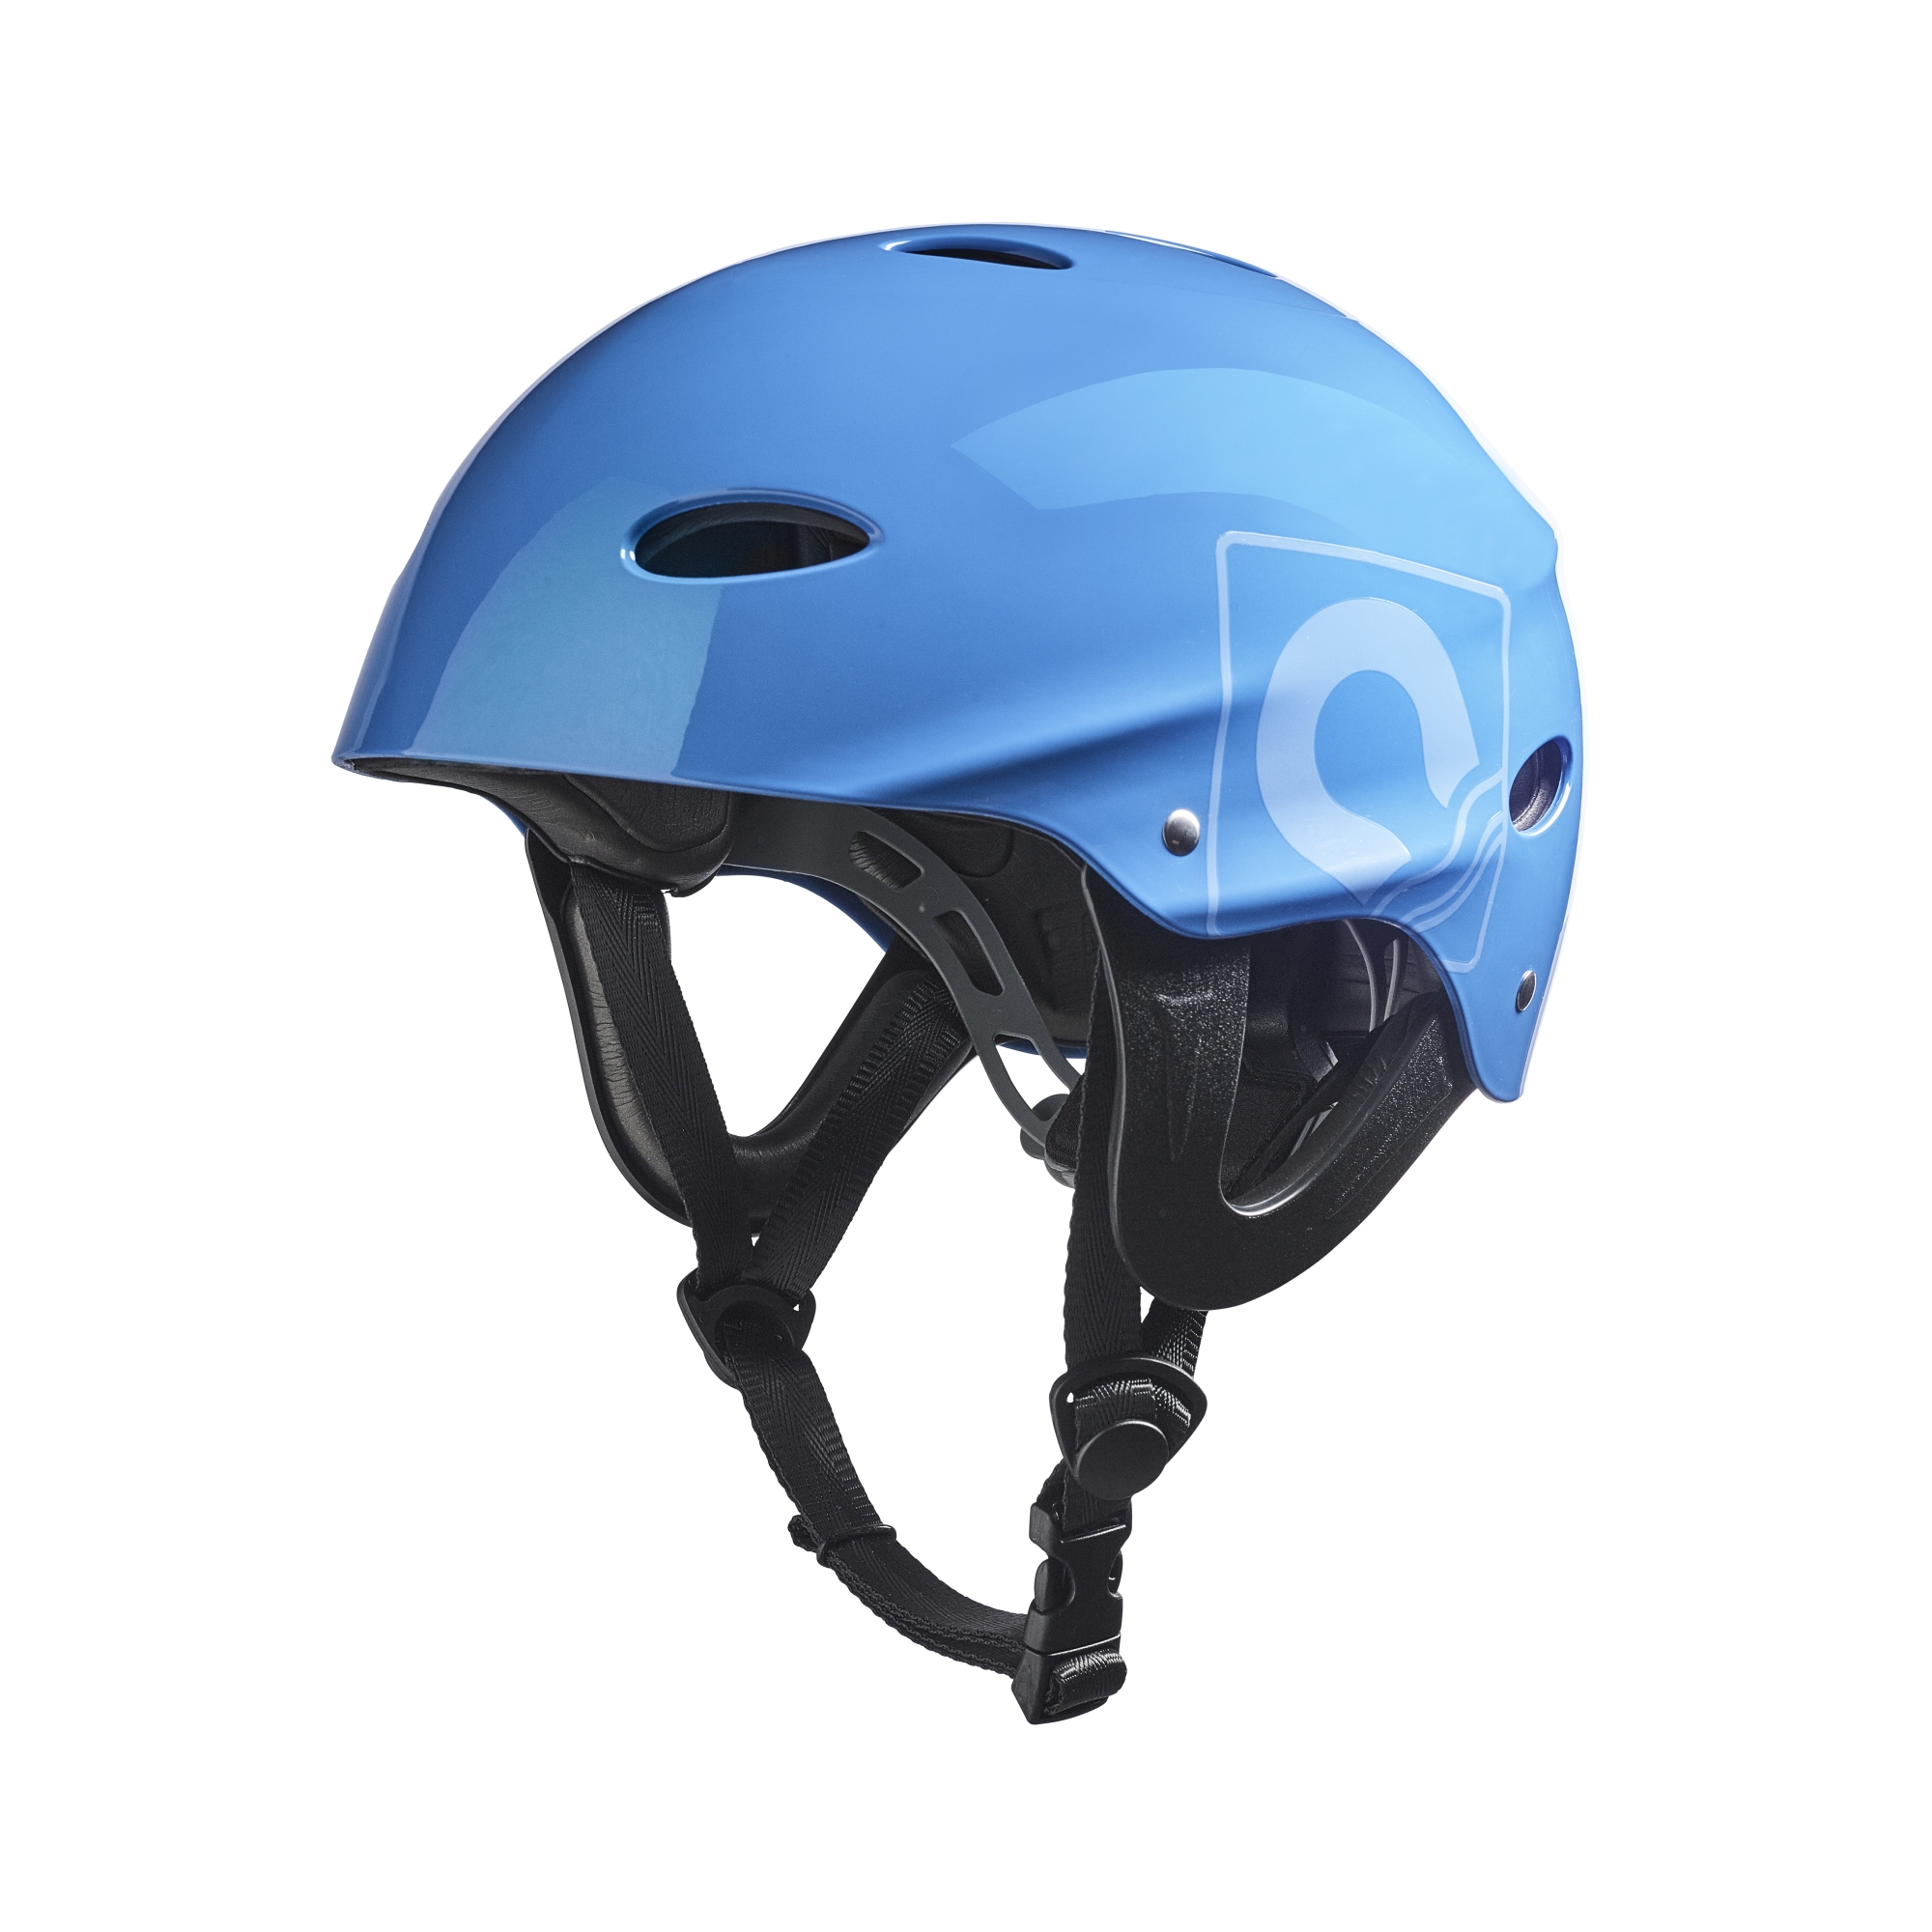 Kortex Helmet Adjustable PU foam lined helmet